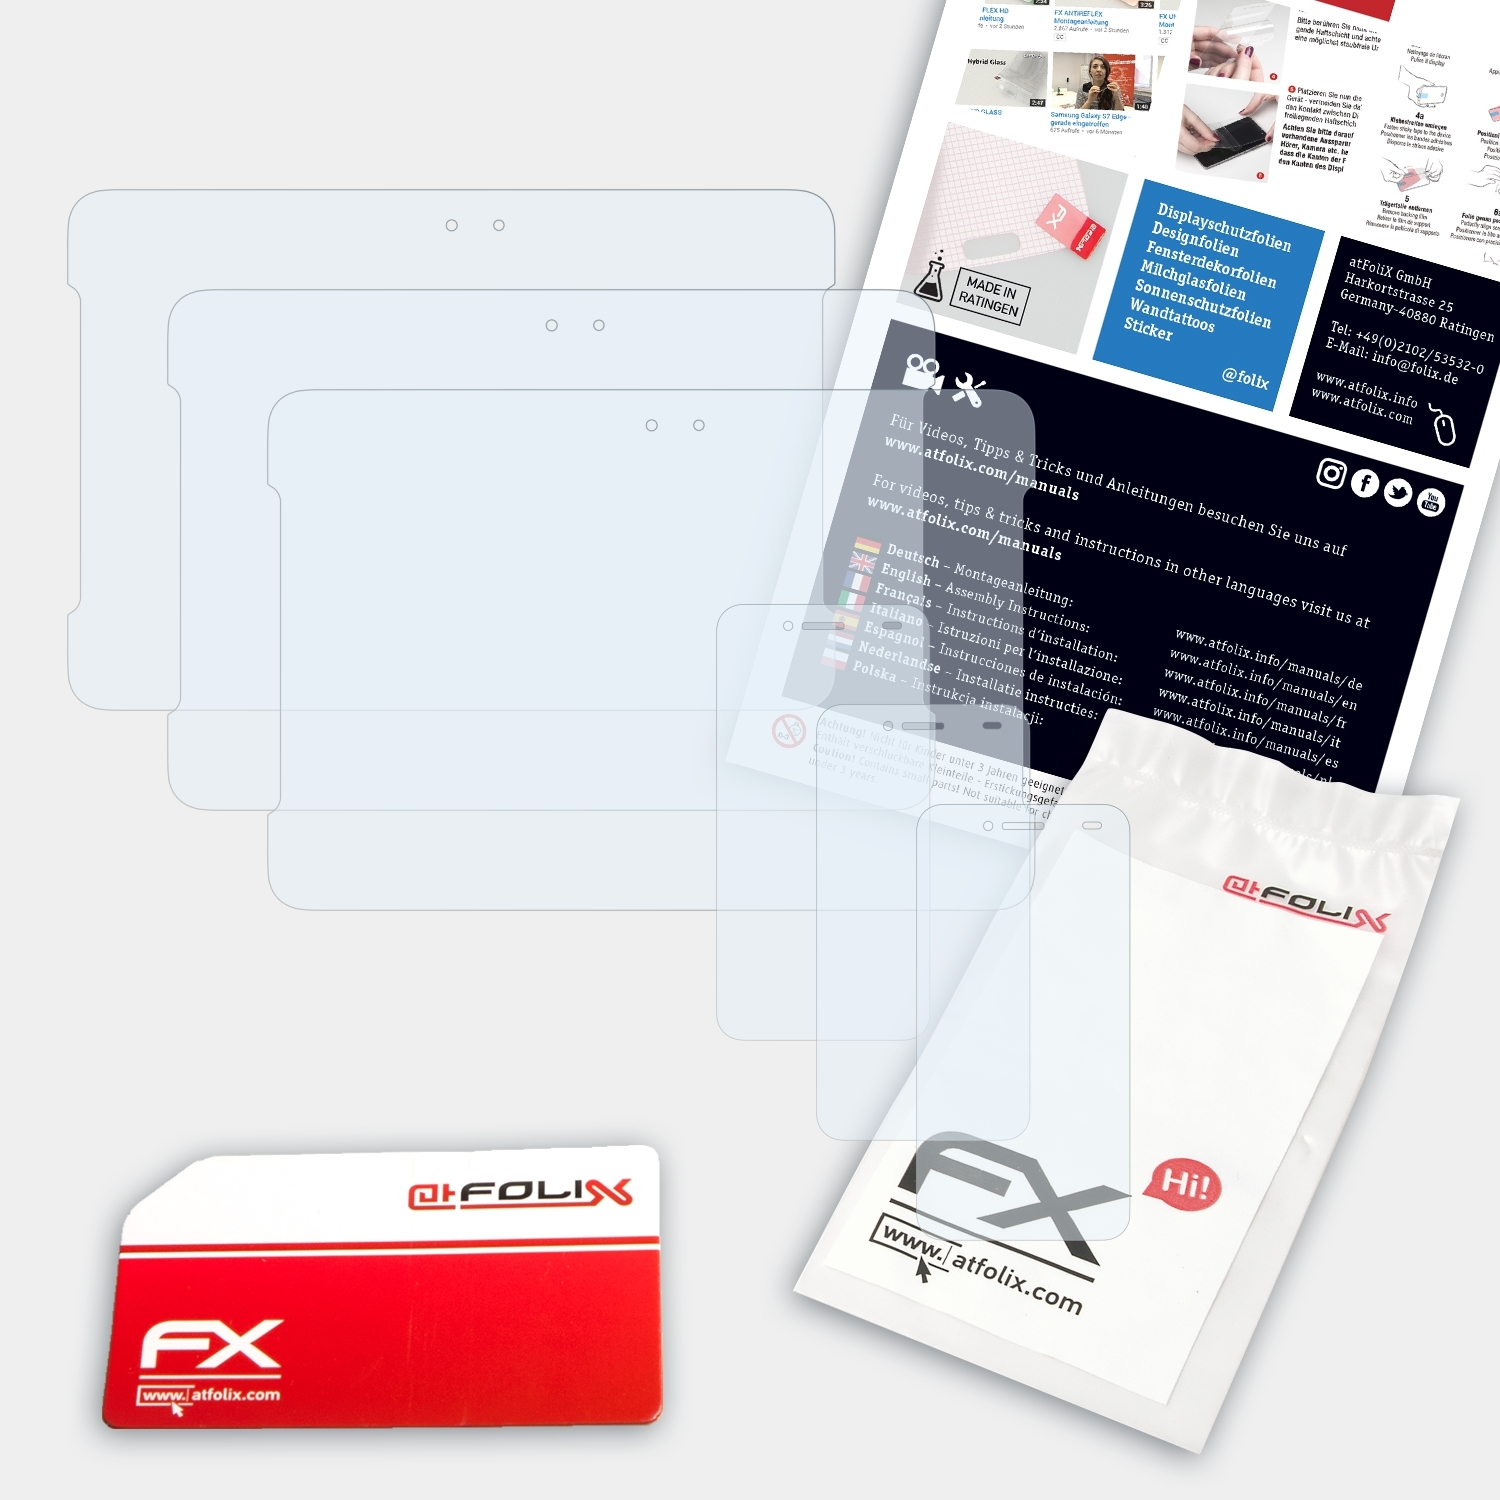 ATFOLIX PadFone FX-Clear S) Asus Displayschutz(für 3x